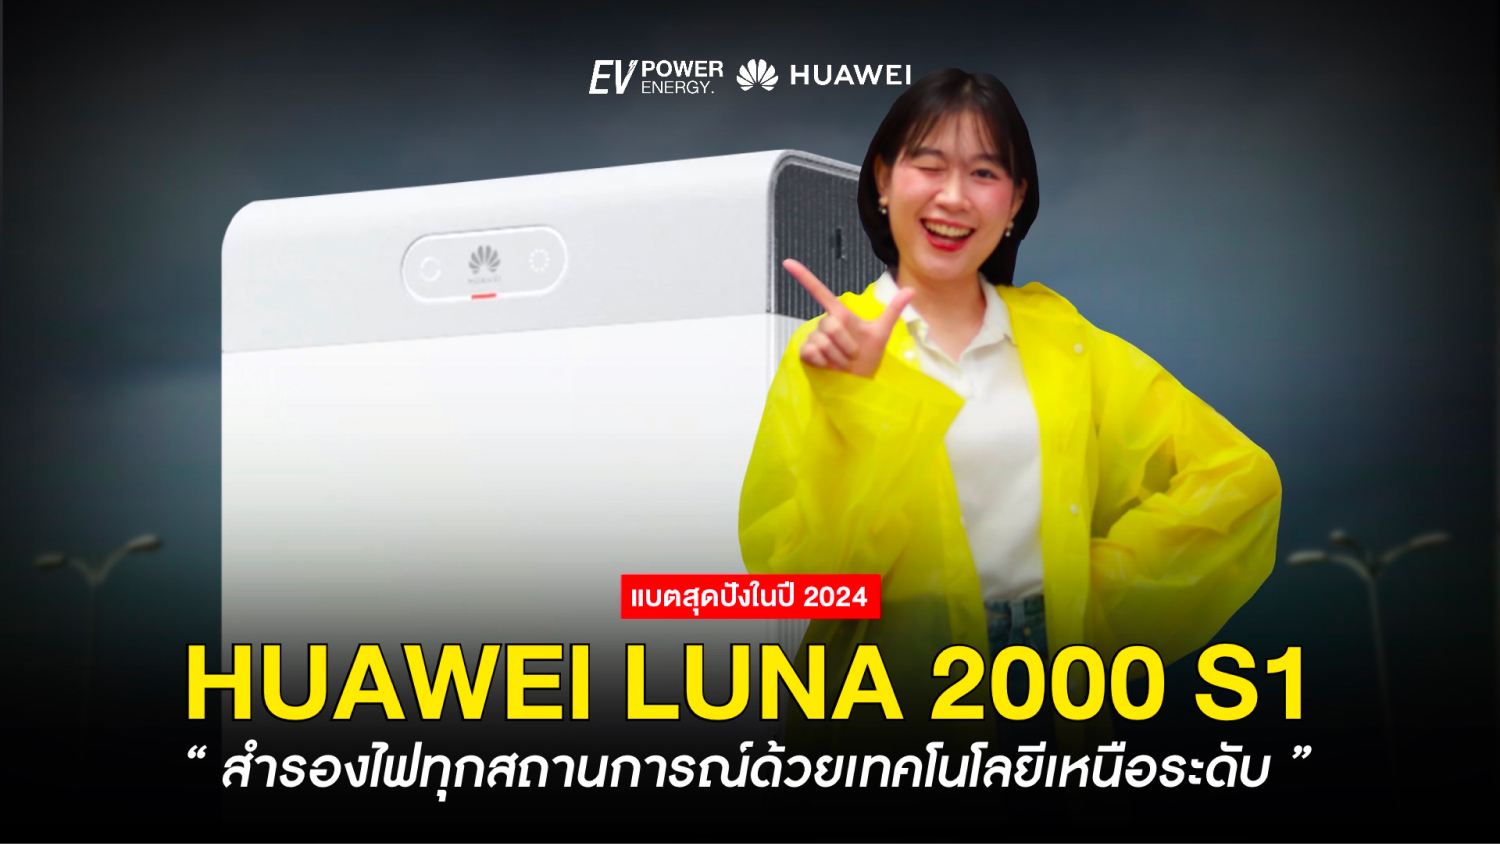 Huawei LUNA 2000 S1 สำรองไฟทุกสถานการณ์ด้วยเทคโนโลยีเหนือระดับ